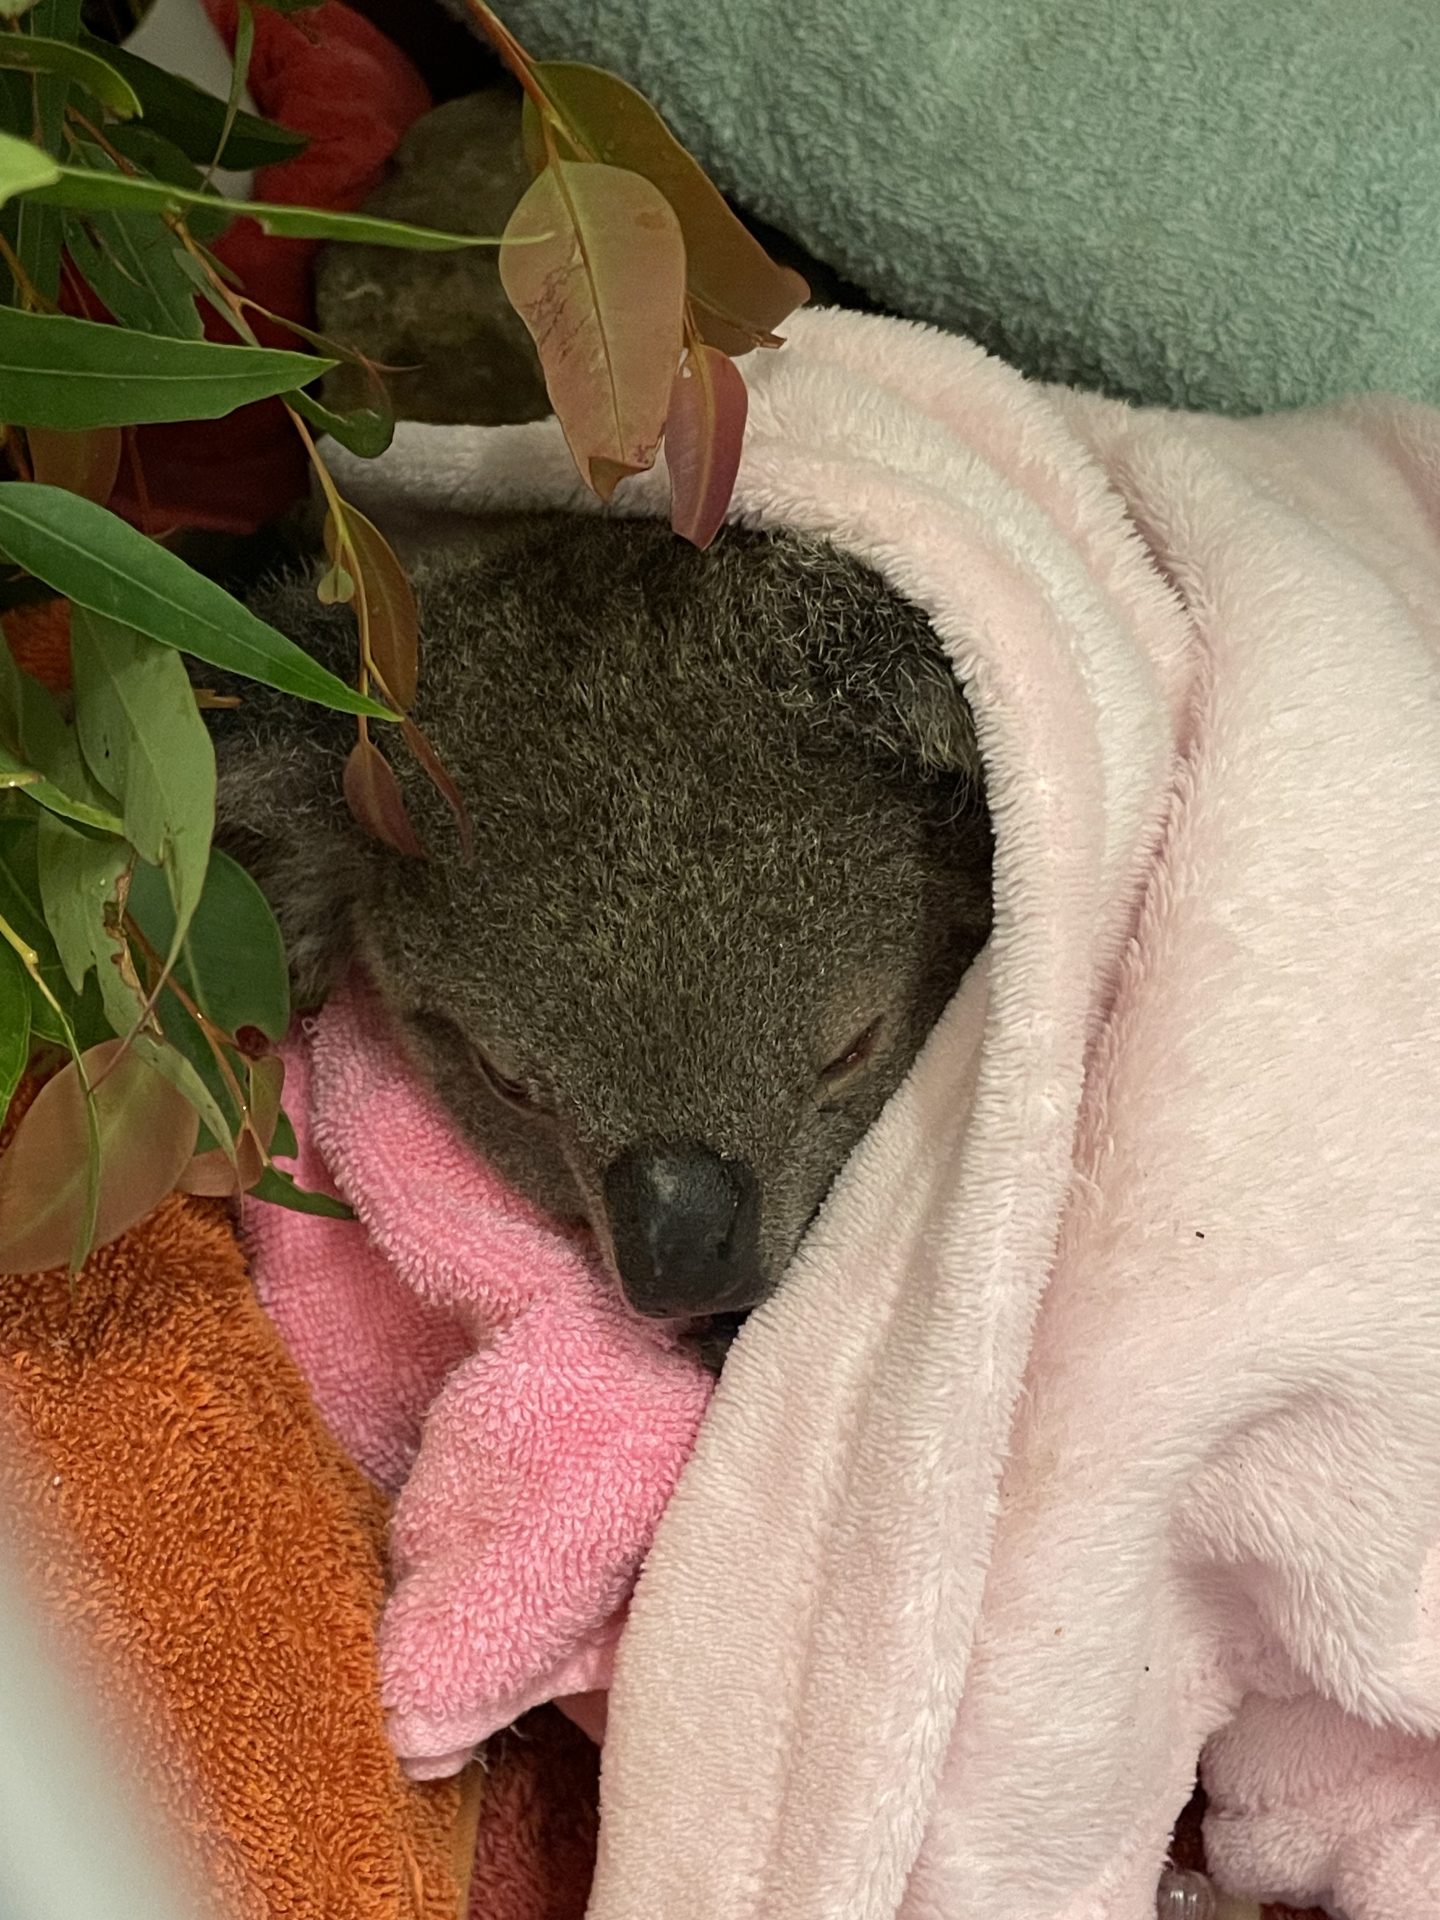 Injured Koala